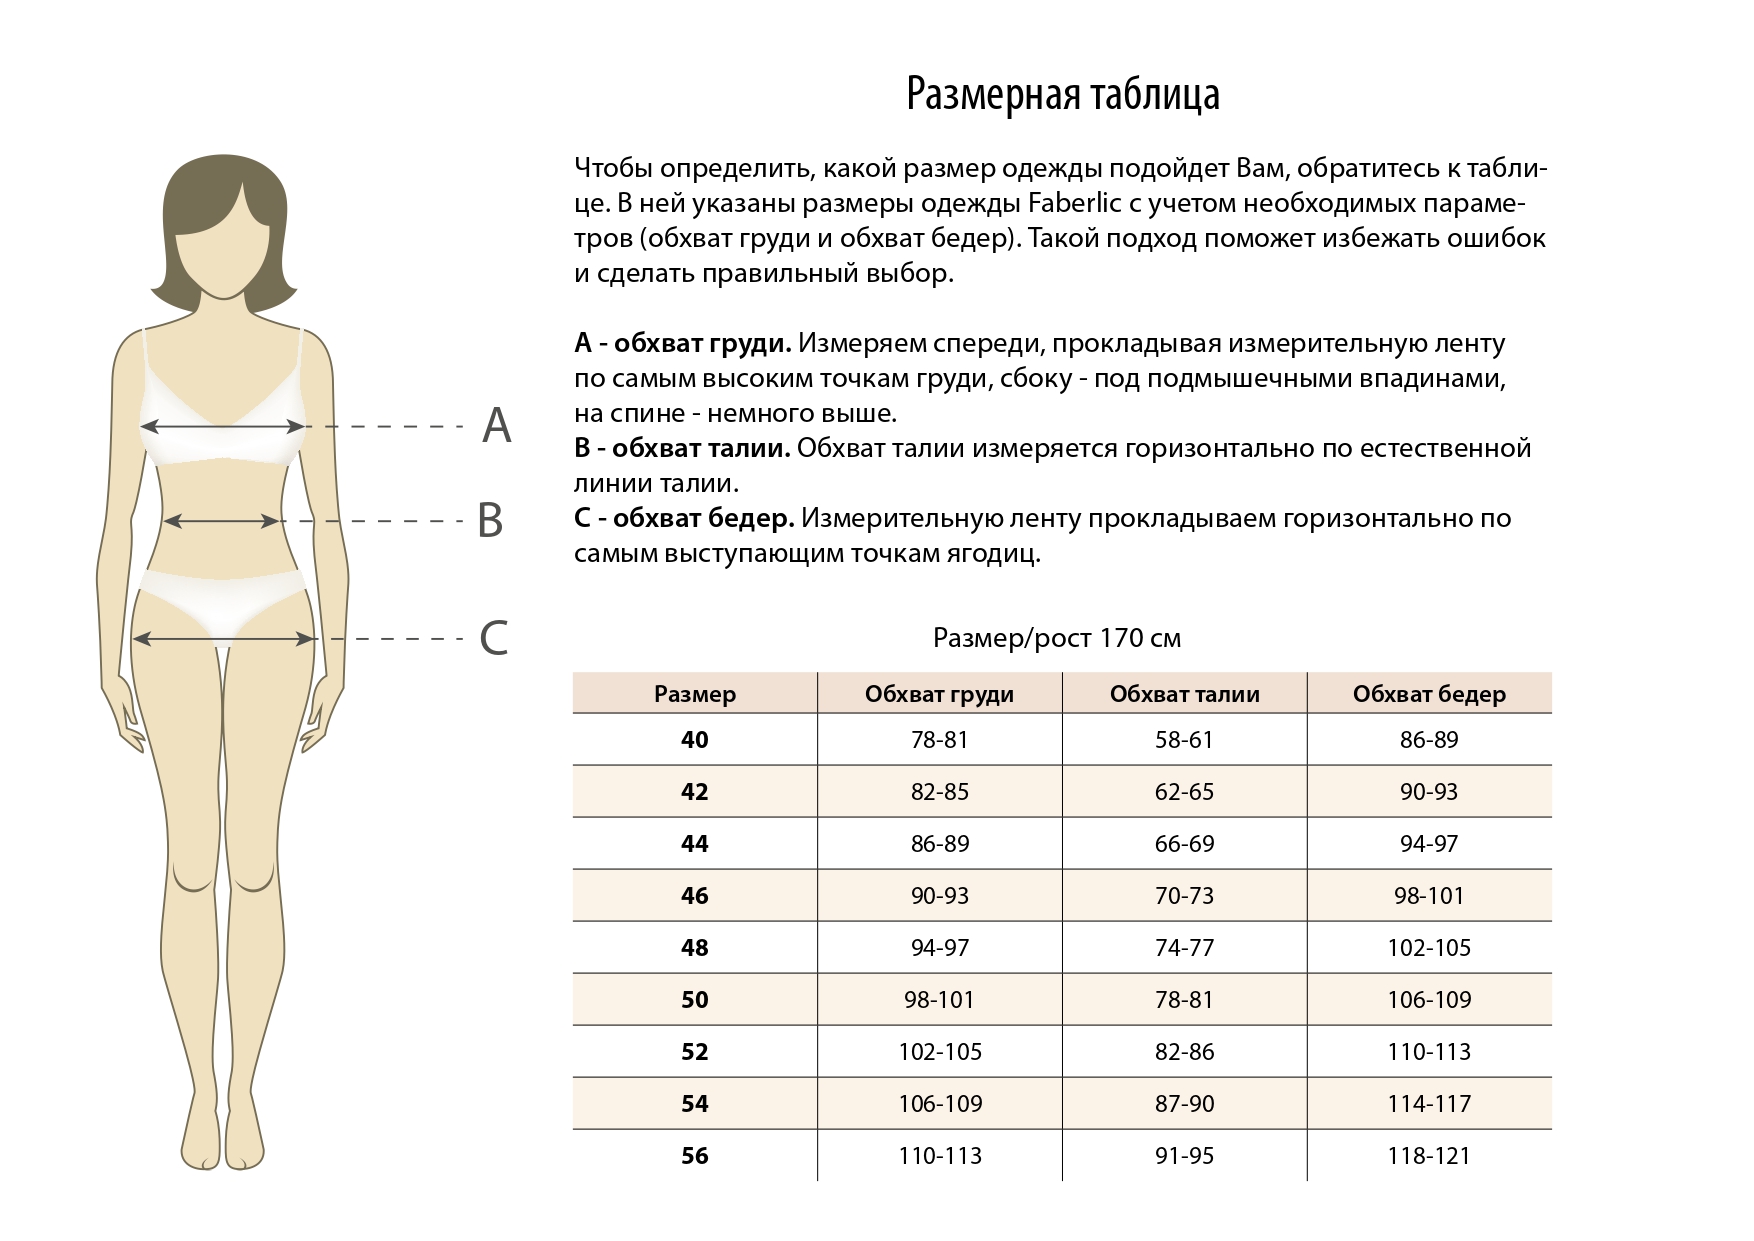 таблица размеров груди по возрасту фото 56